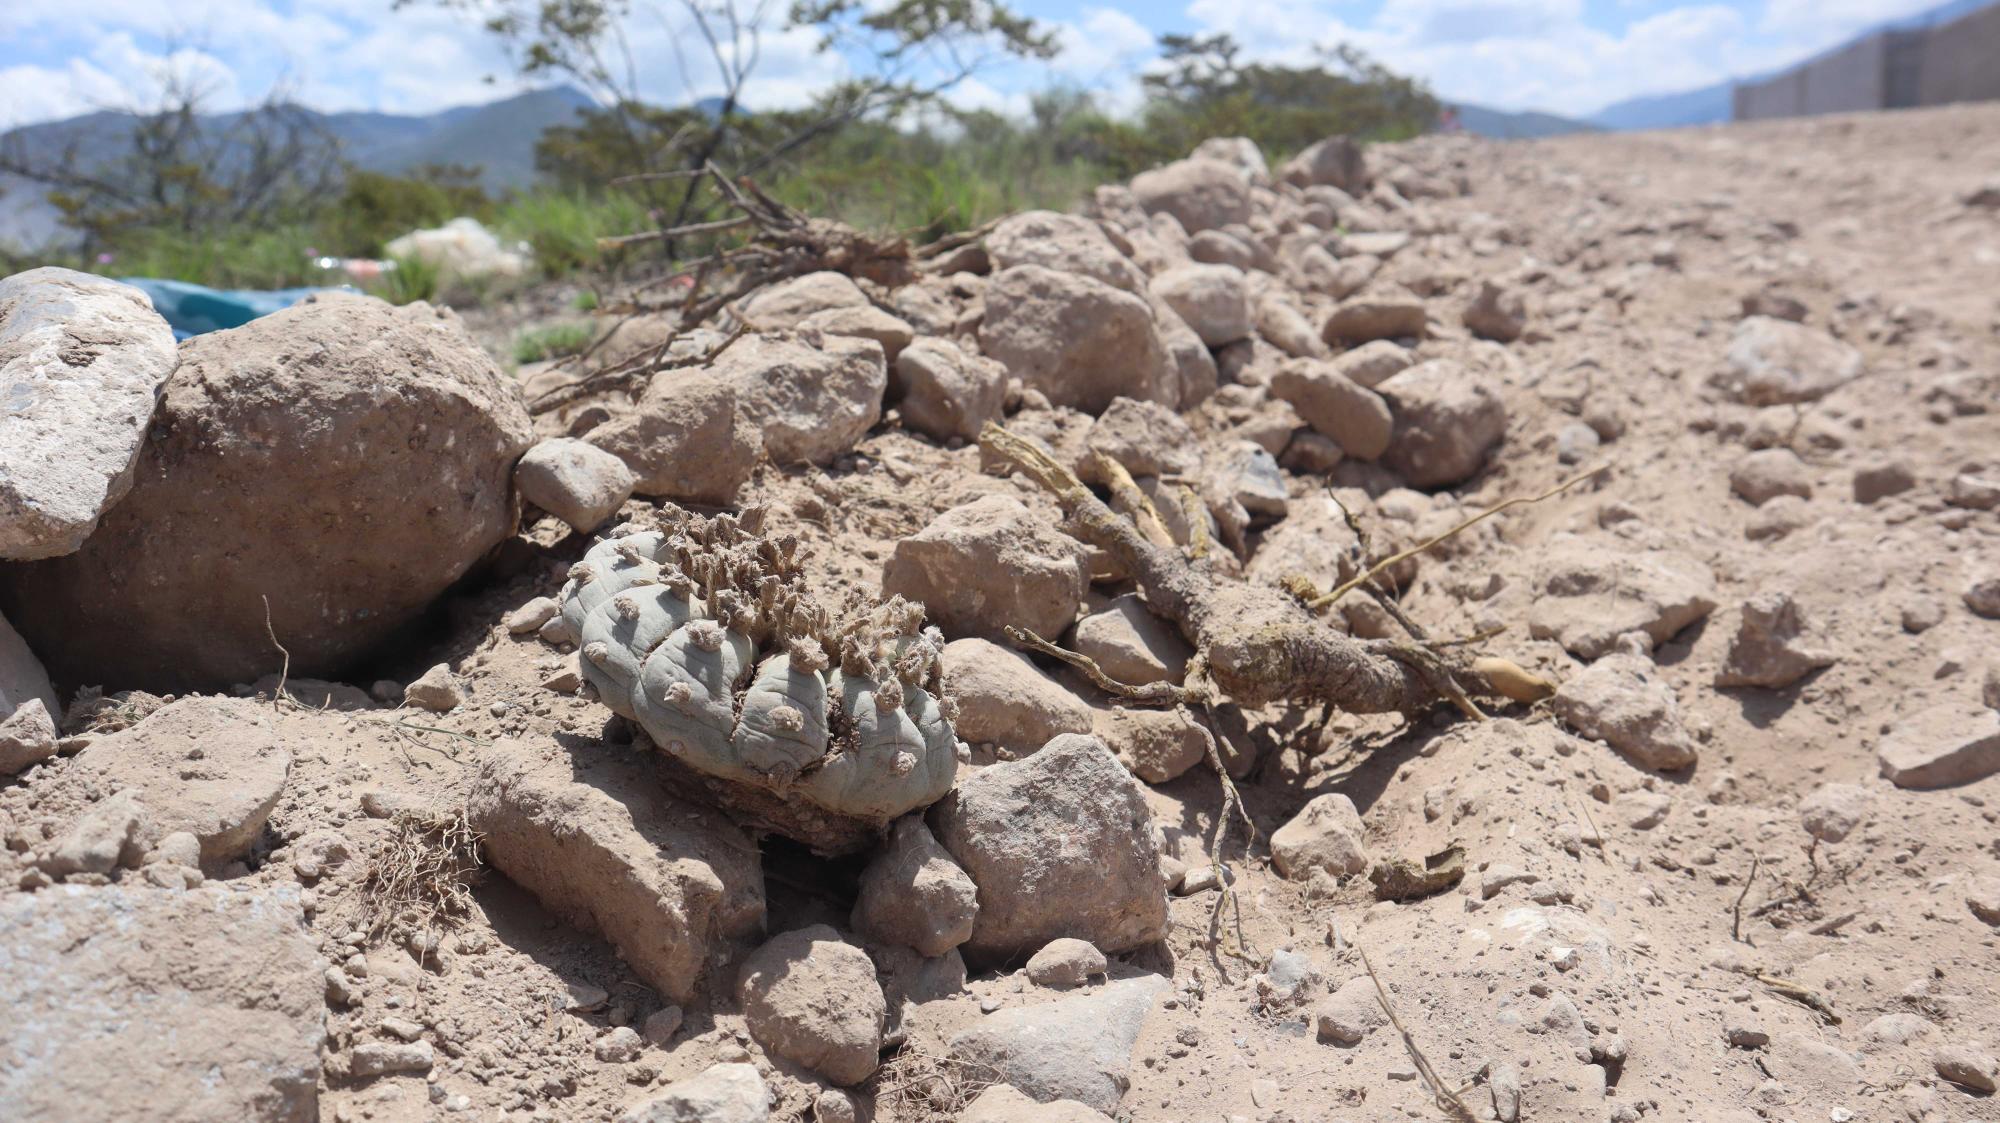 $!El estatus legal del peyote en México busca asegurar su supervivencia y conservación en su entorno natural.